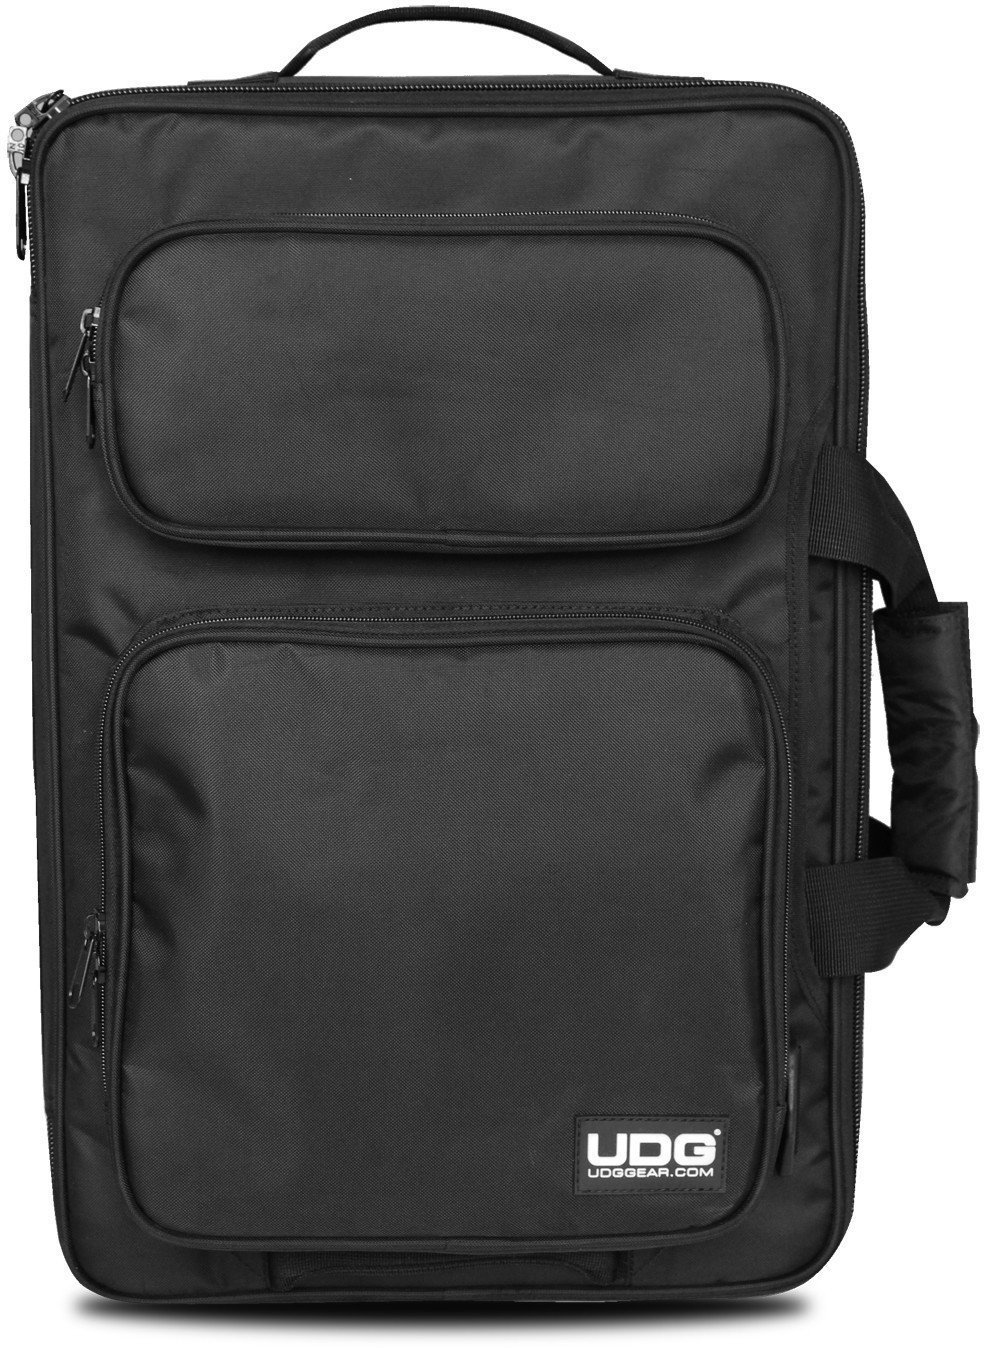 Carrinho para DJ UDG Ultimate MIDI Controller Backpack BK/OR S Carrinho para DJ